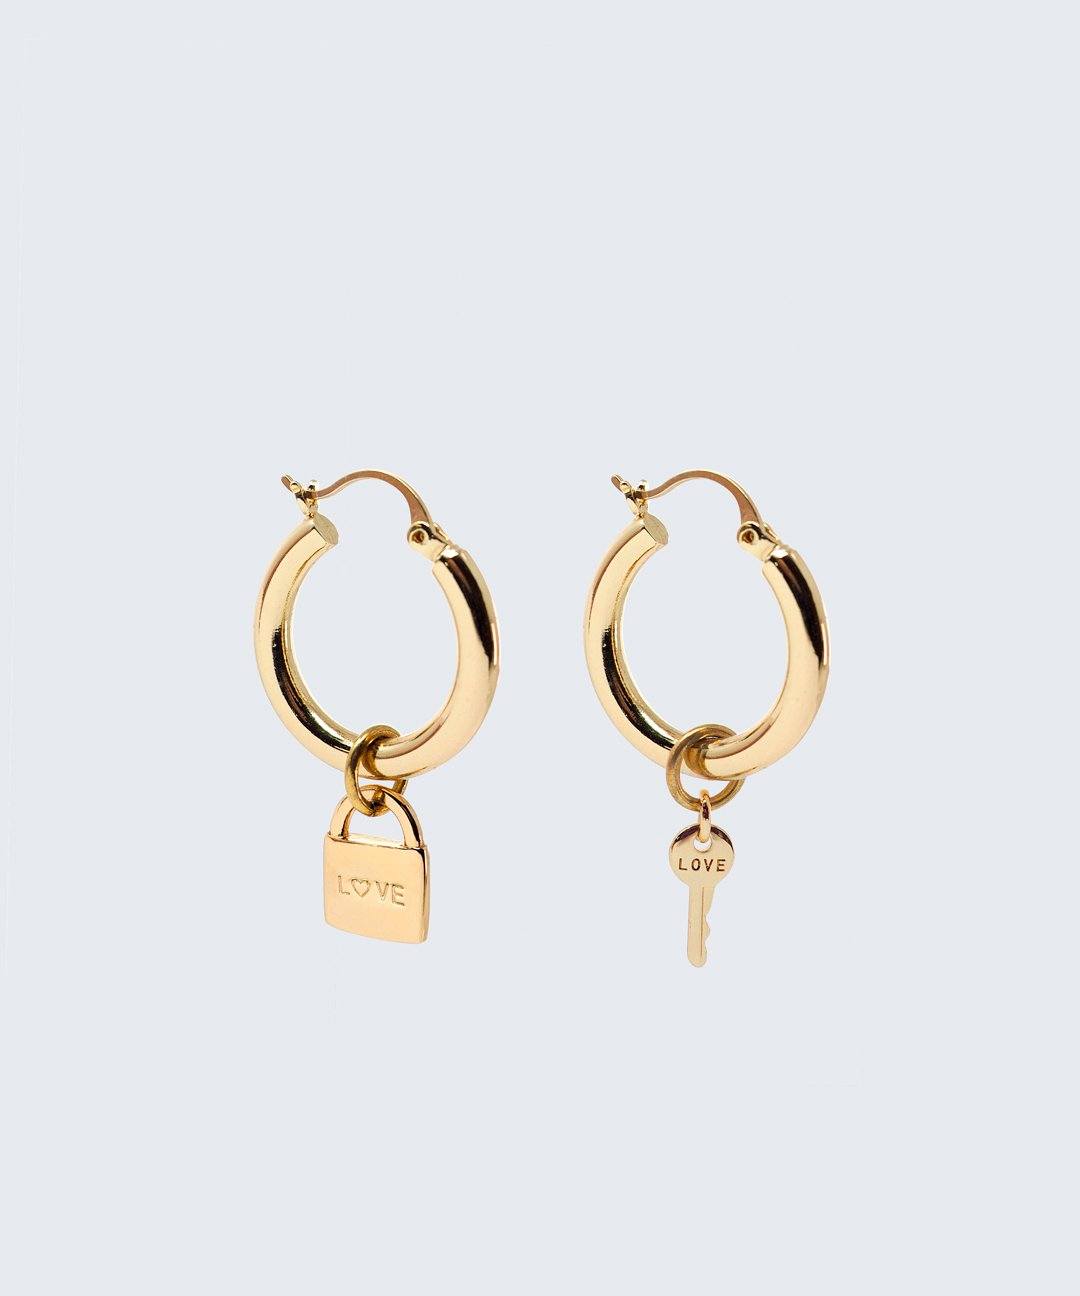 Riji Earrings Earrings The Giving Keys LOVE + LOVE Gold 